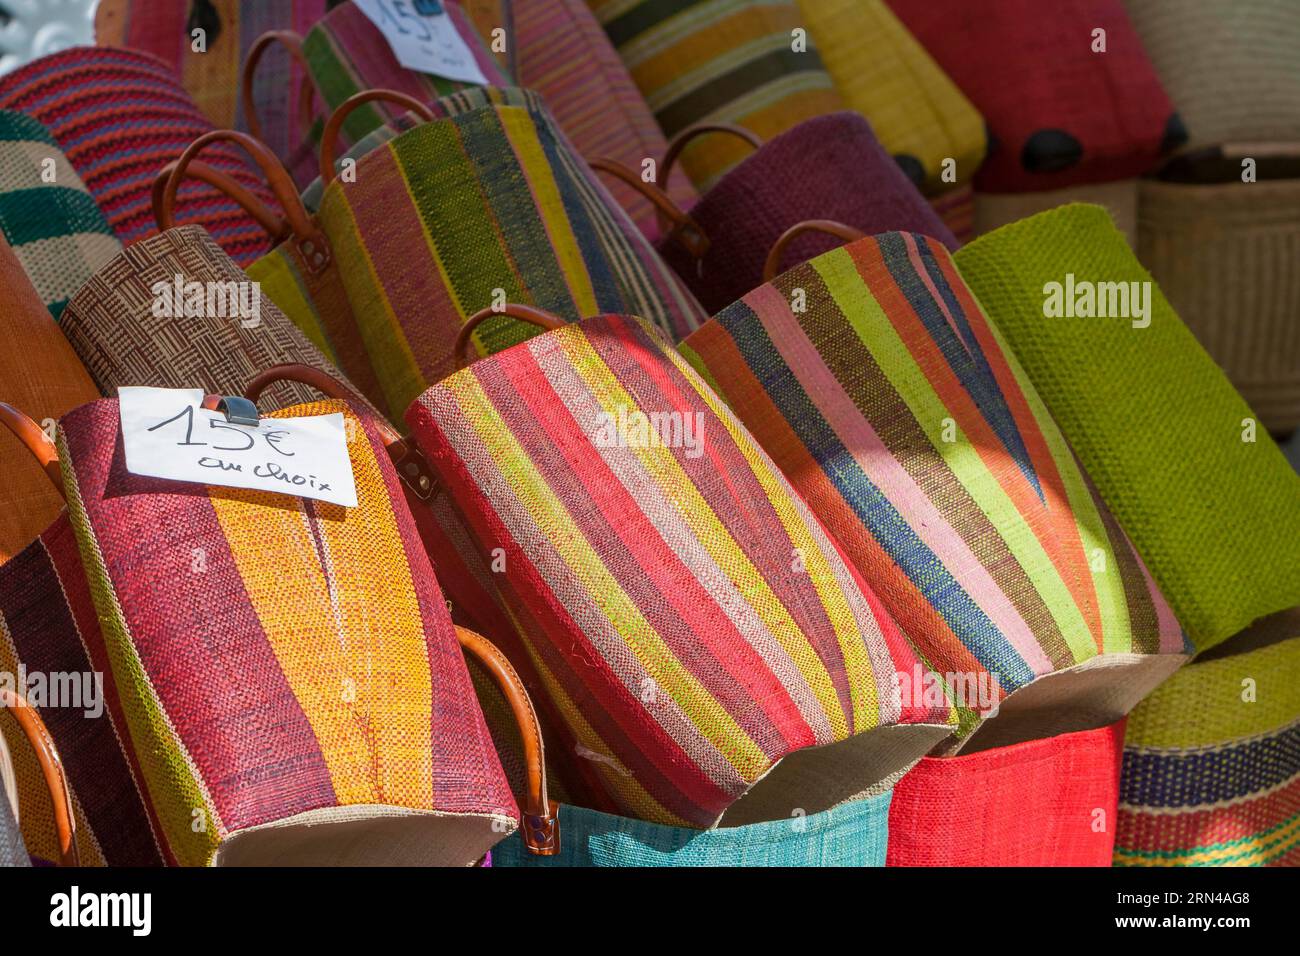 Bancarella con borse colorate, mercato settimanale, Sault, dipartimento di Vaucluse nella regione Provence-Alpes-Costa Azzurra, Francia Foto Stock